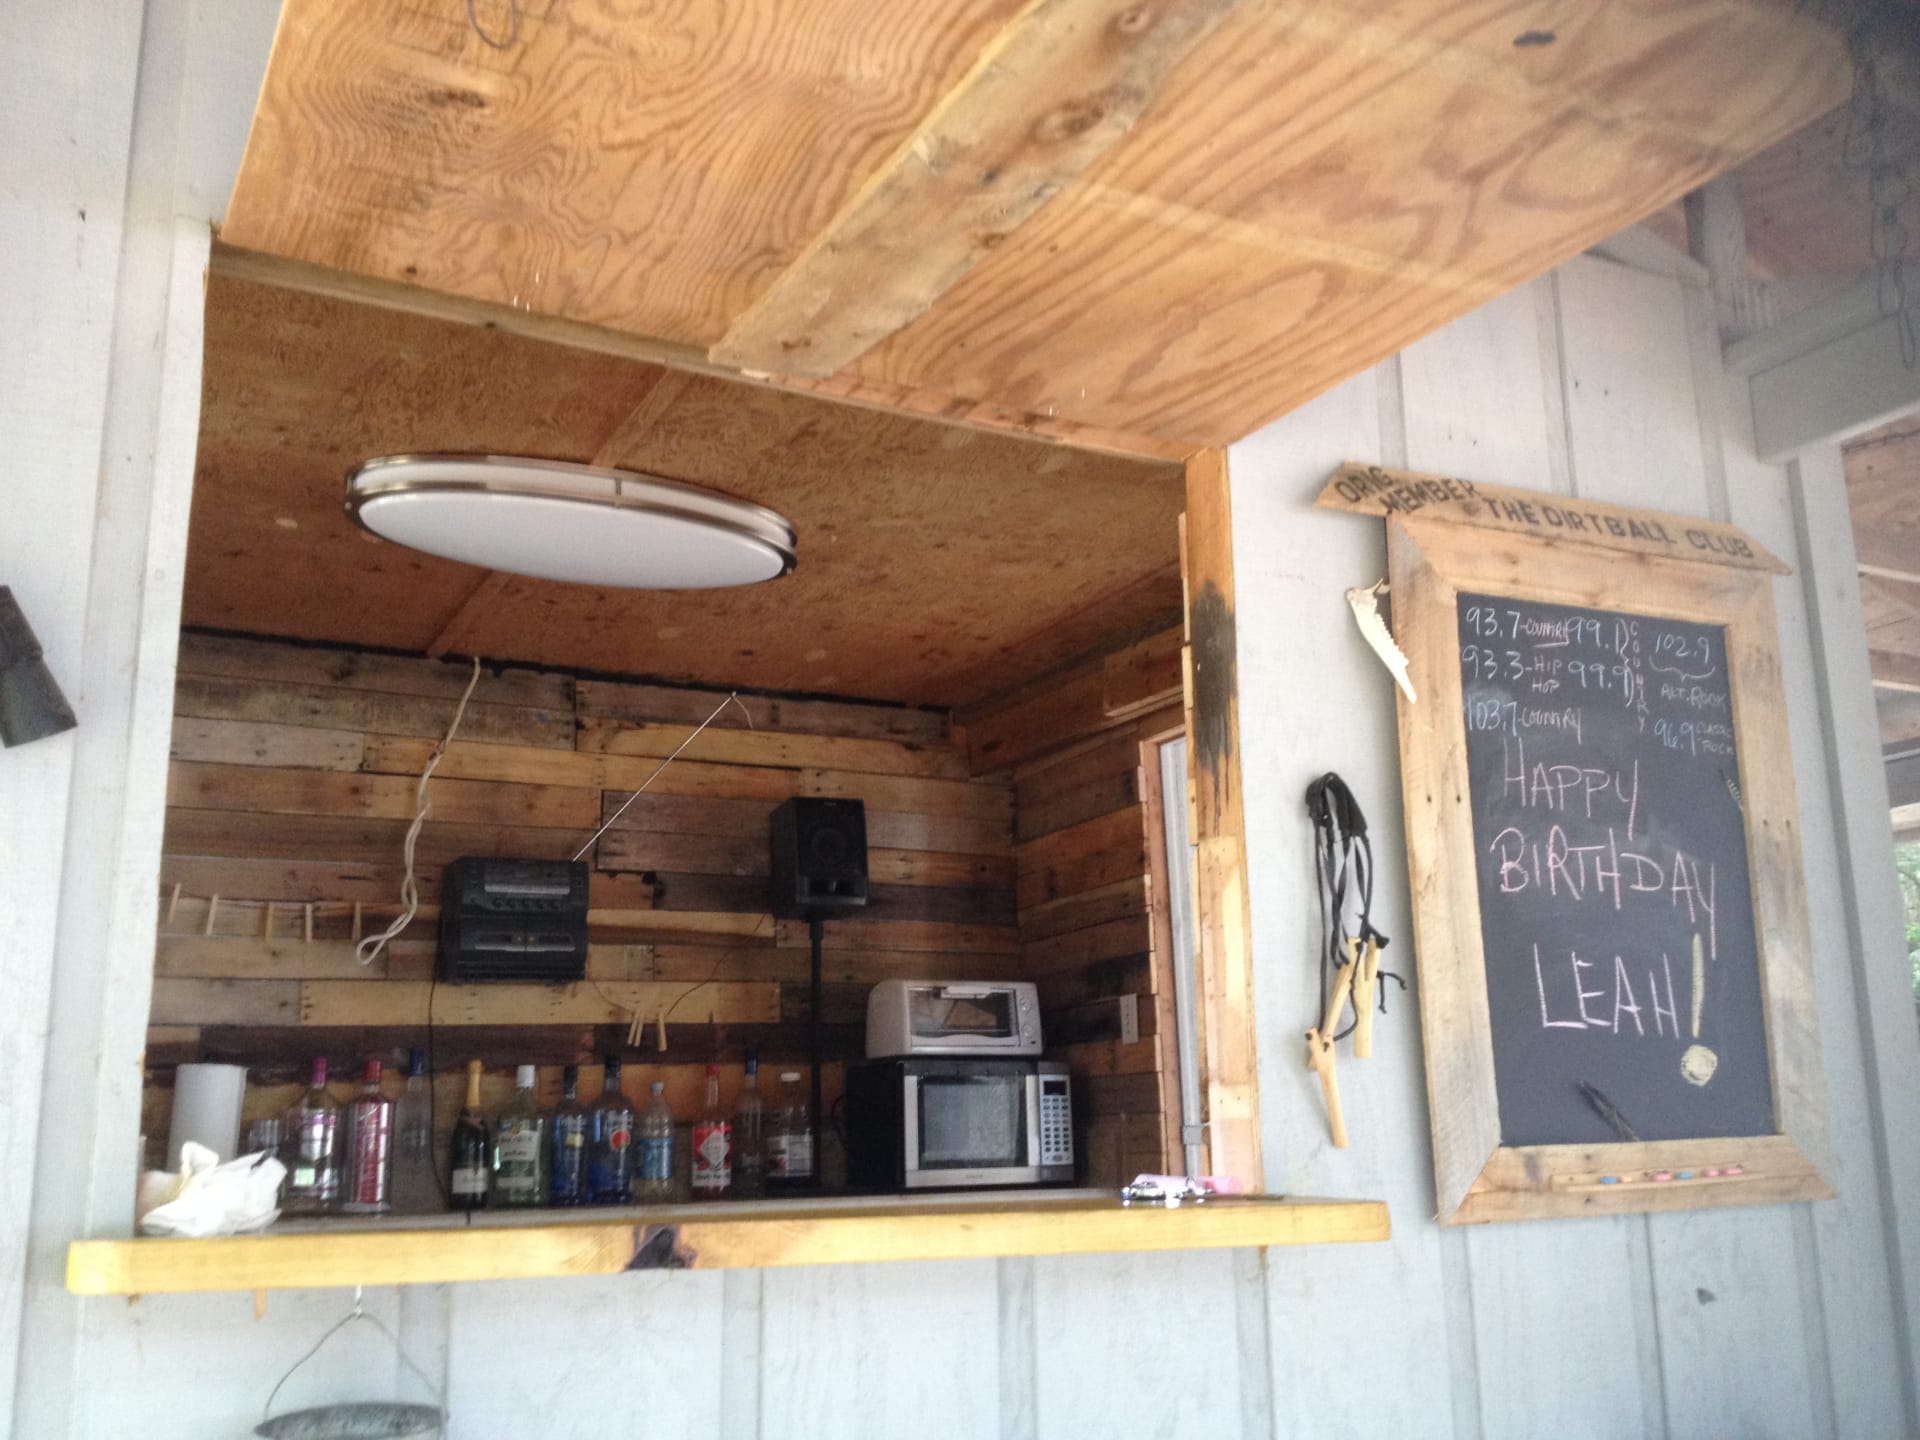 "Canteen" Outdoor Kitchen & Bar